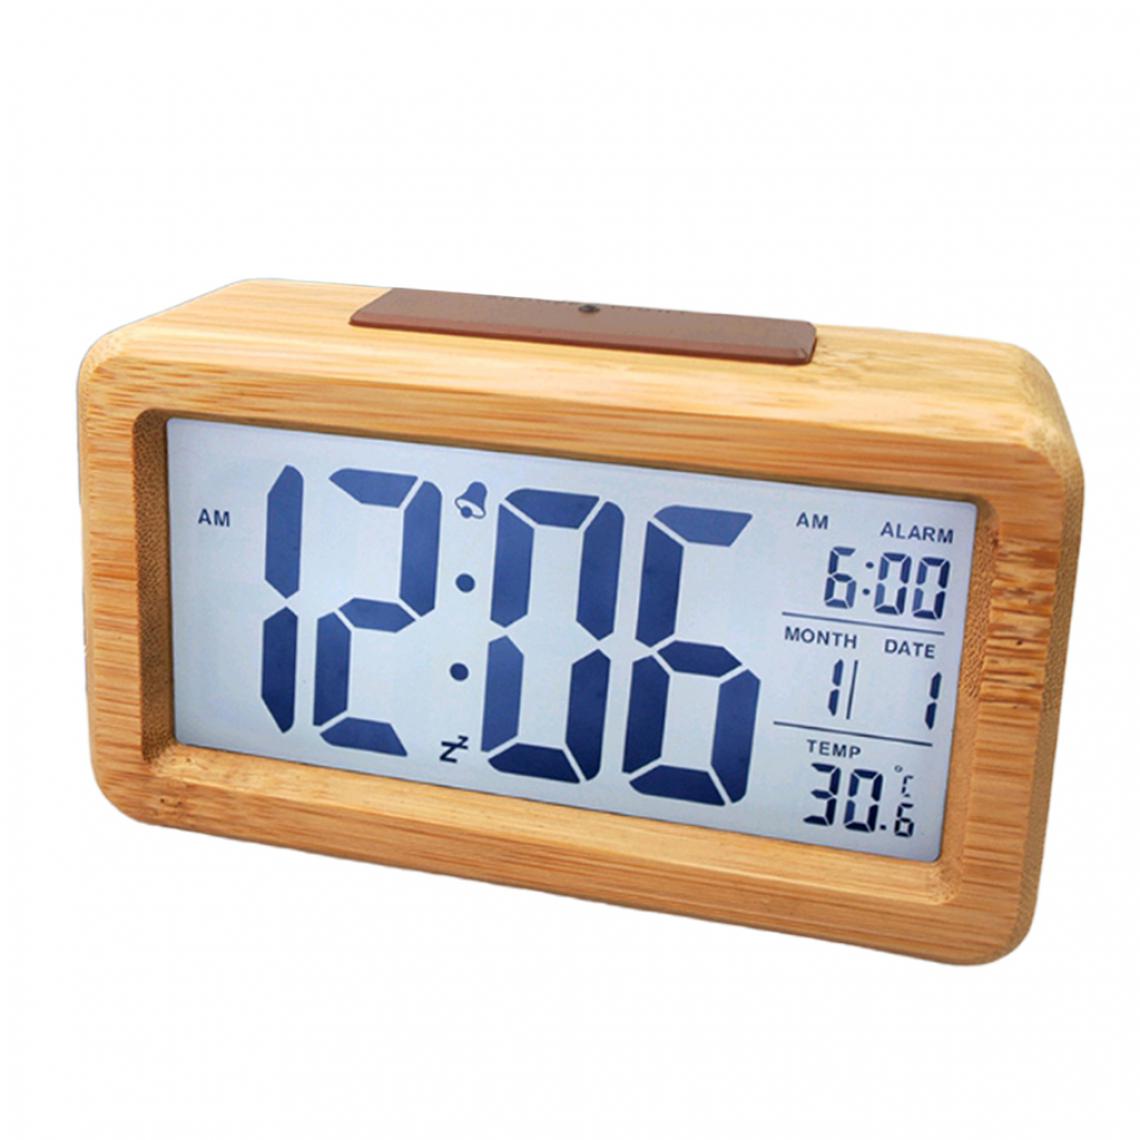 marque generique - Horloge électronique Intelligente En Bois Avec Affichage De La Température Et Horloge En Bambou - Réveil